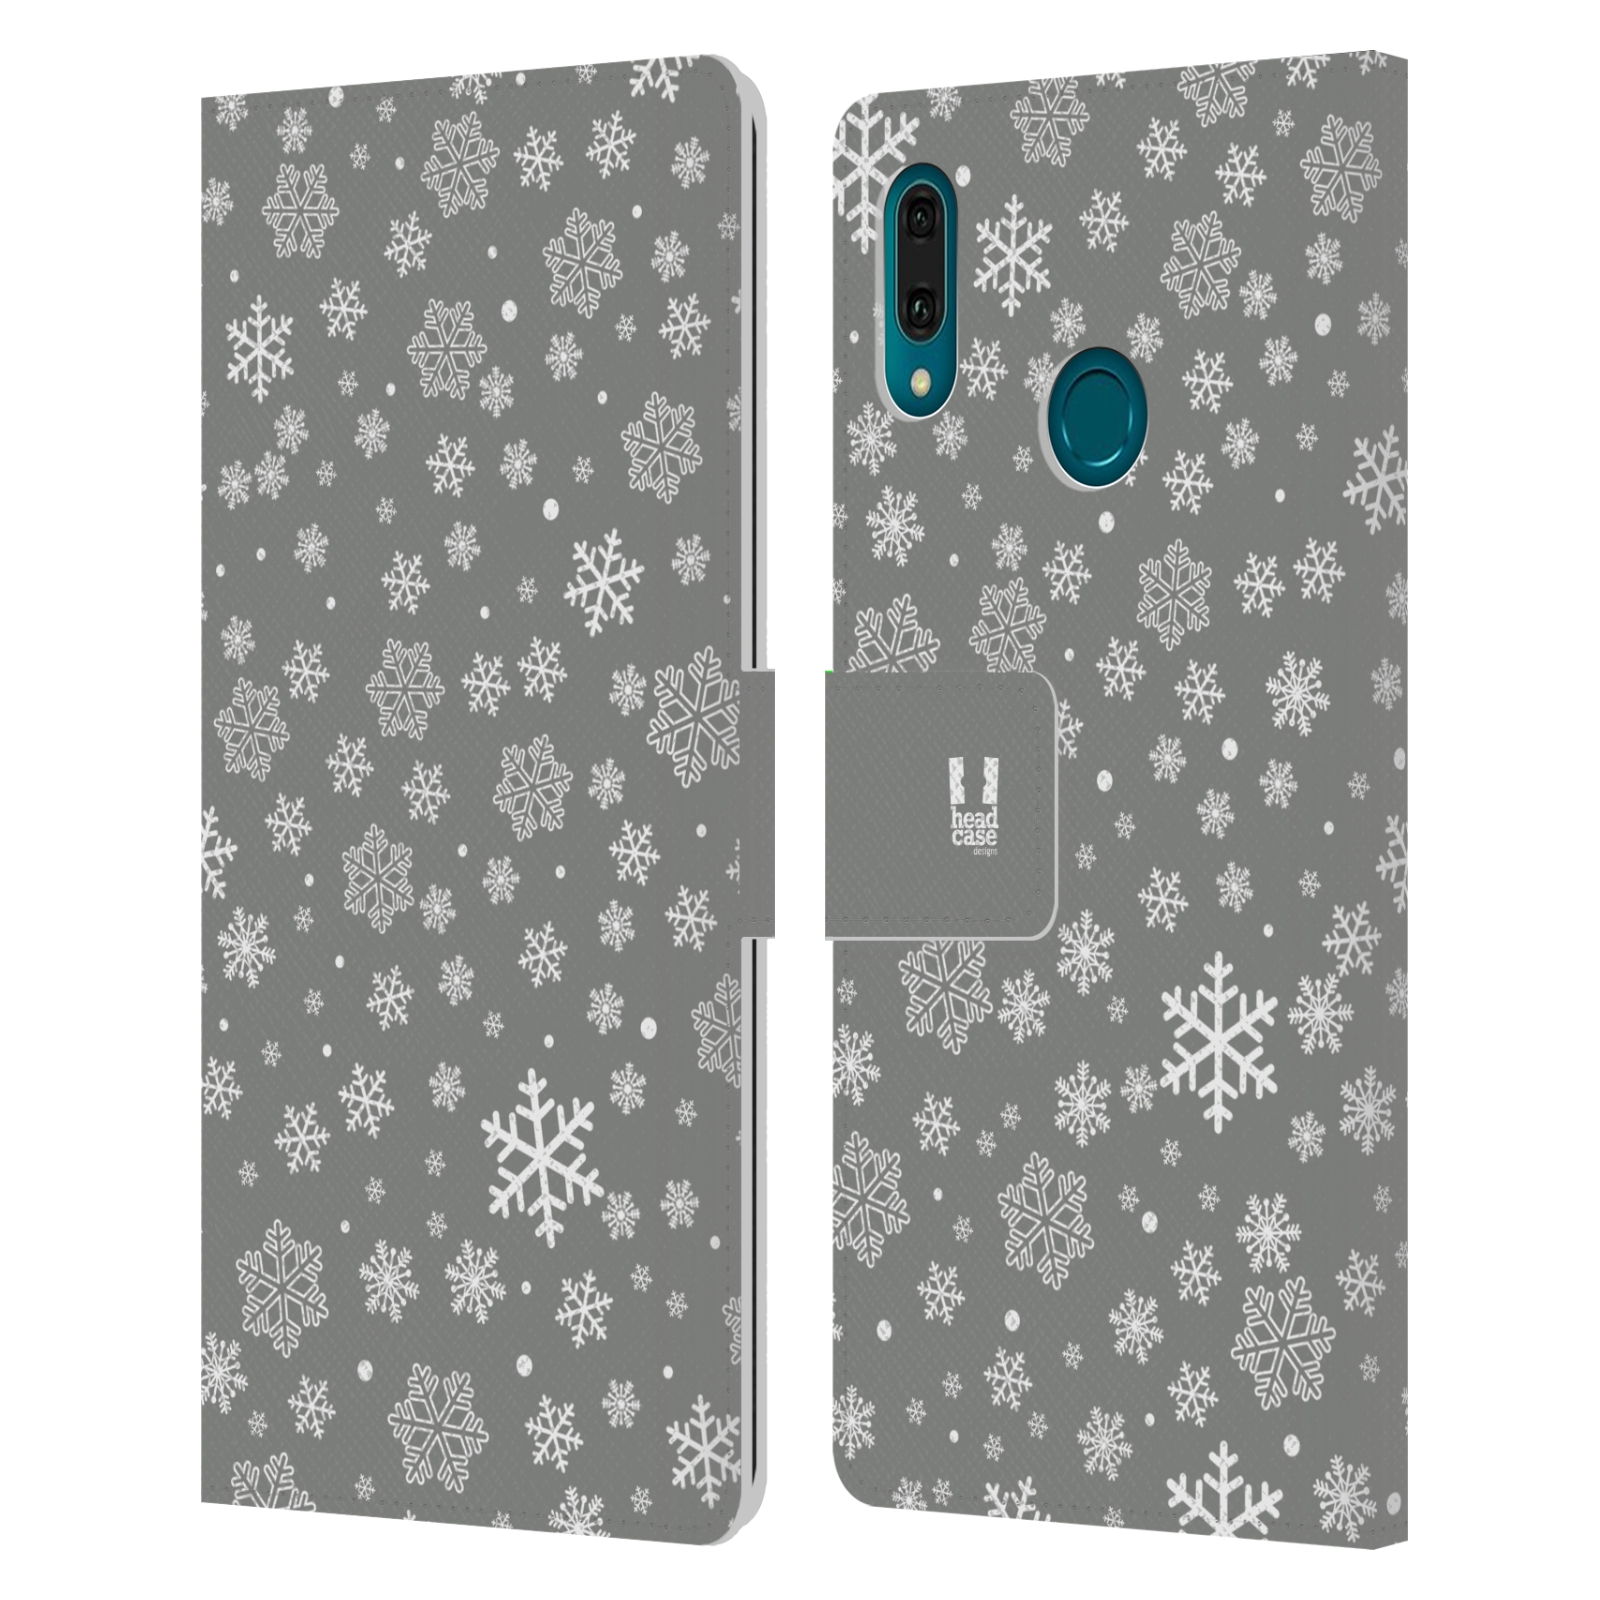 Pouzdro na mobil Huawei Y9 2019 stříbrné vzory sněžná vločka